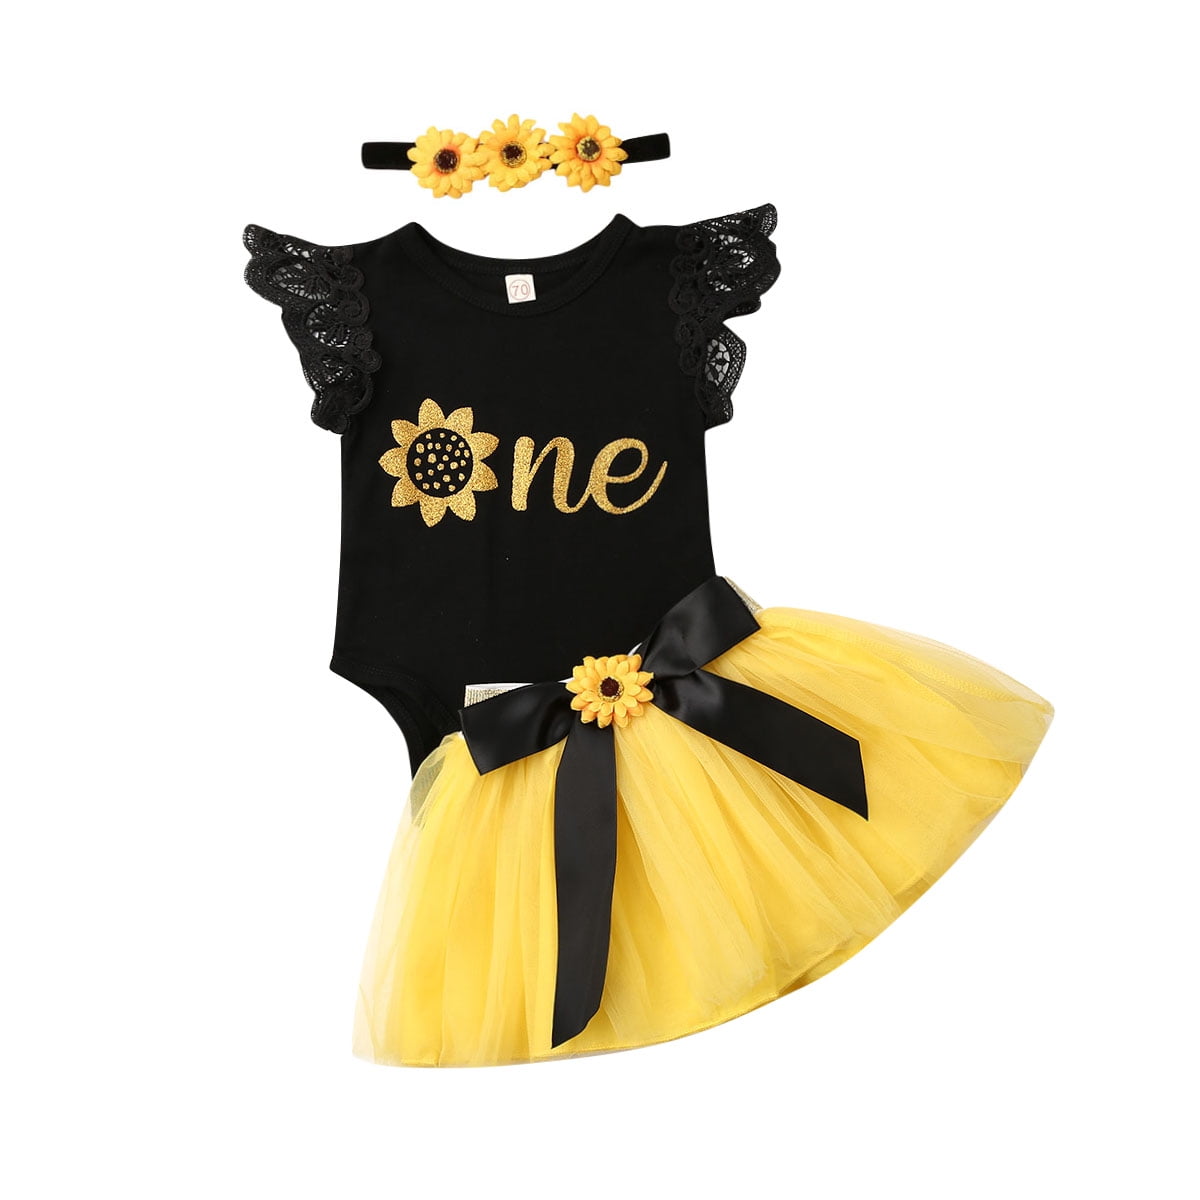 Baby Girls 1st Birthday Tutu Outfit Dress Skirt Cake Smash Photoshoot Polka dot 